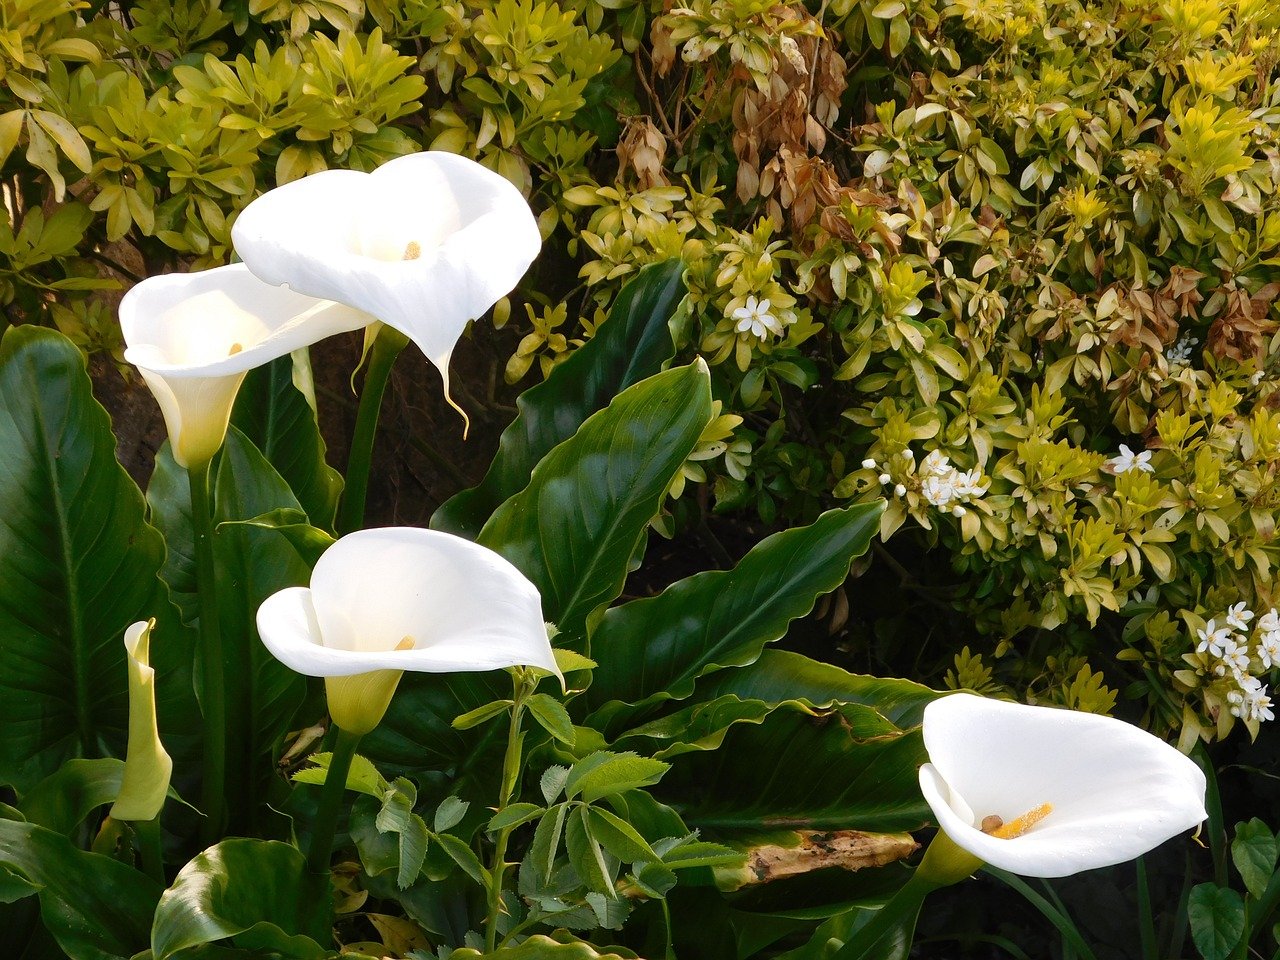 flori albe si frunze verzi frumoase de crinul pacii intr-o gradina alaturi de alte plante